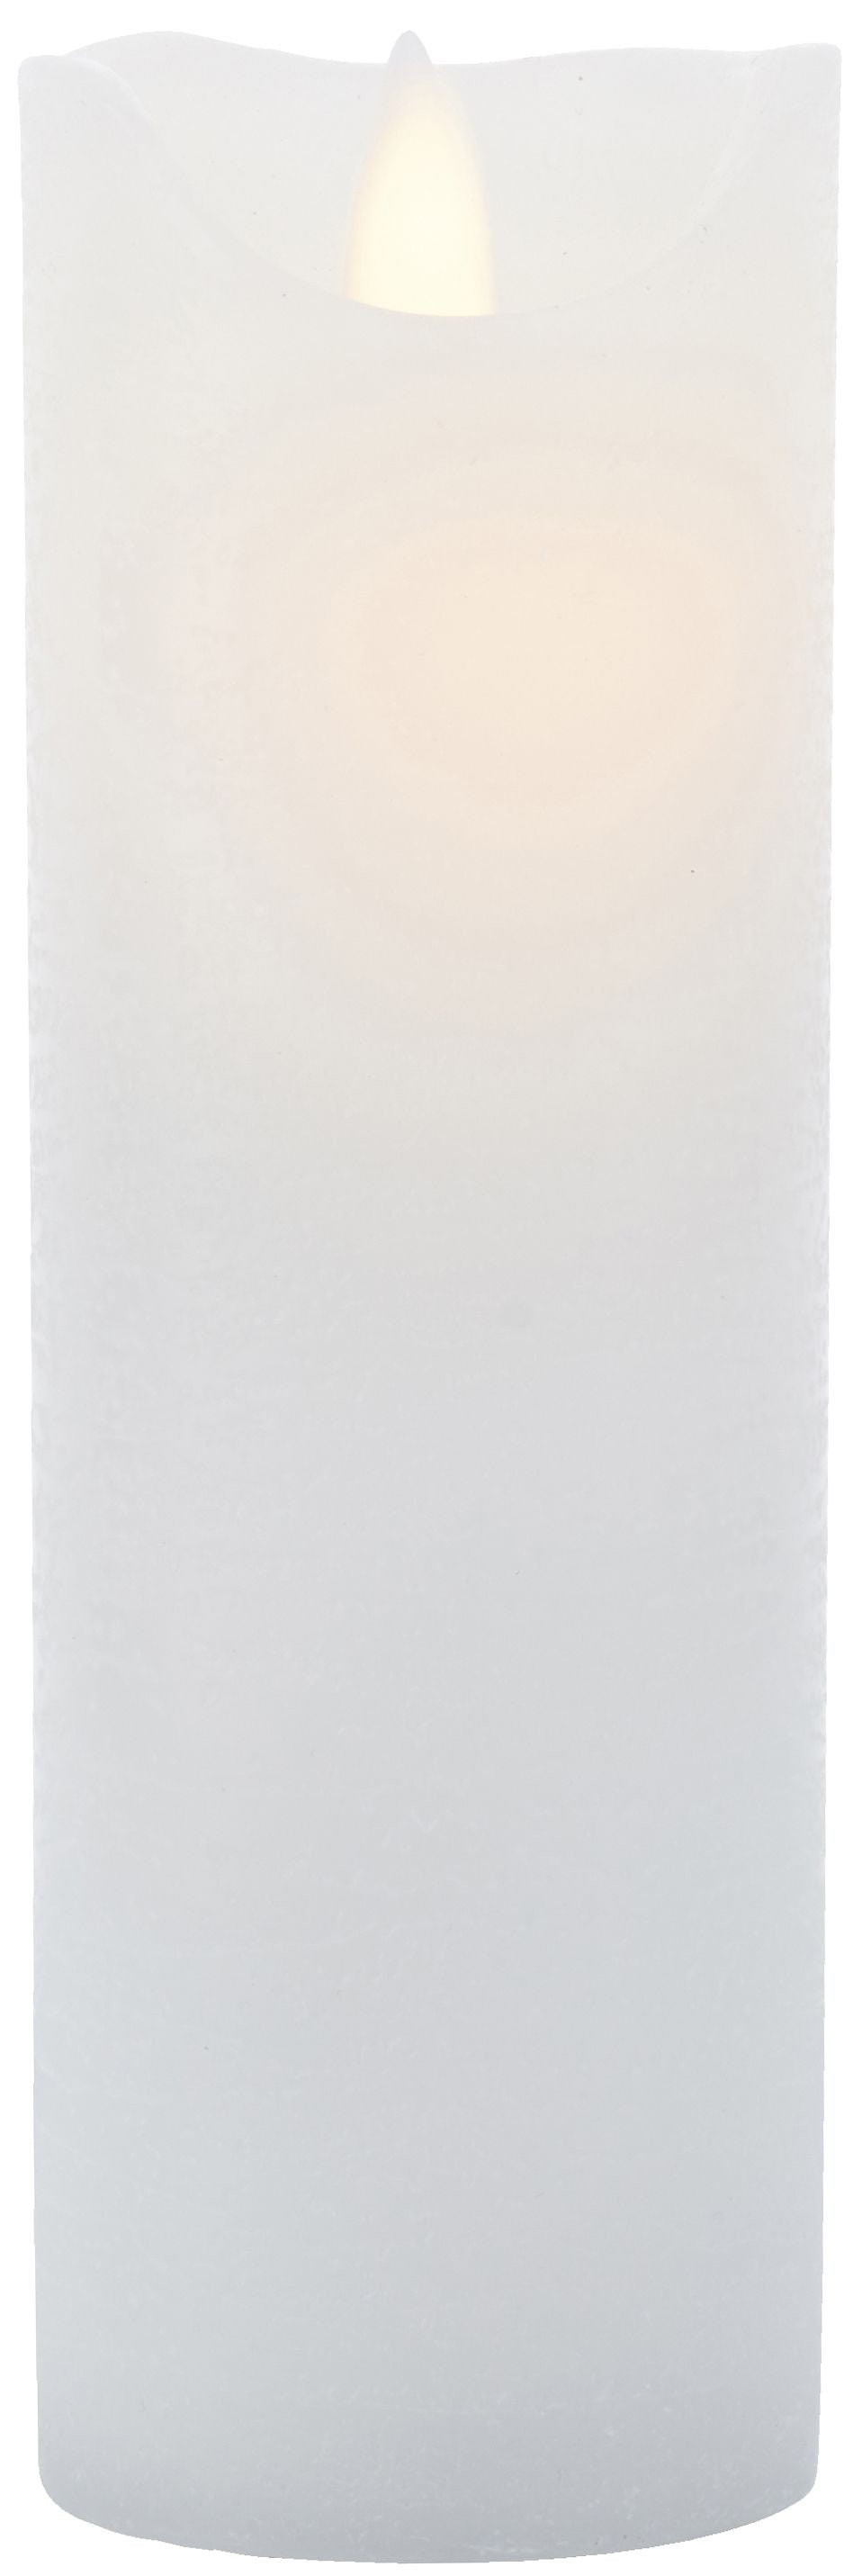 Sirius Sara ricaricabile a LED White, Ø7,5x h20cm